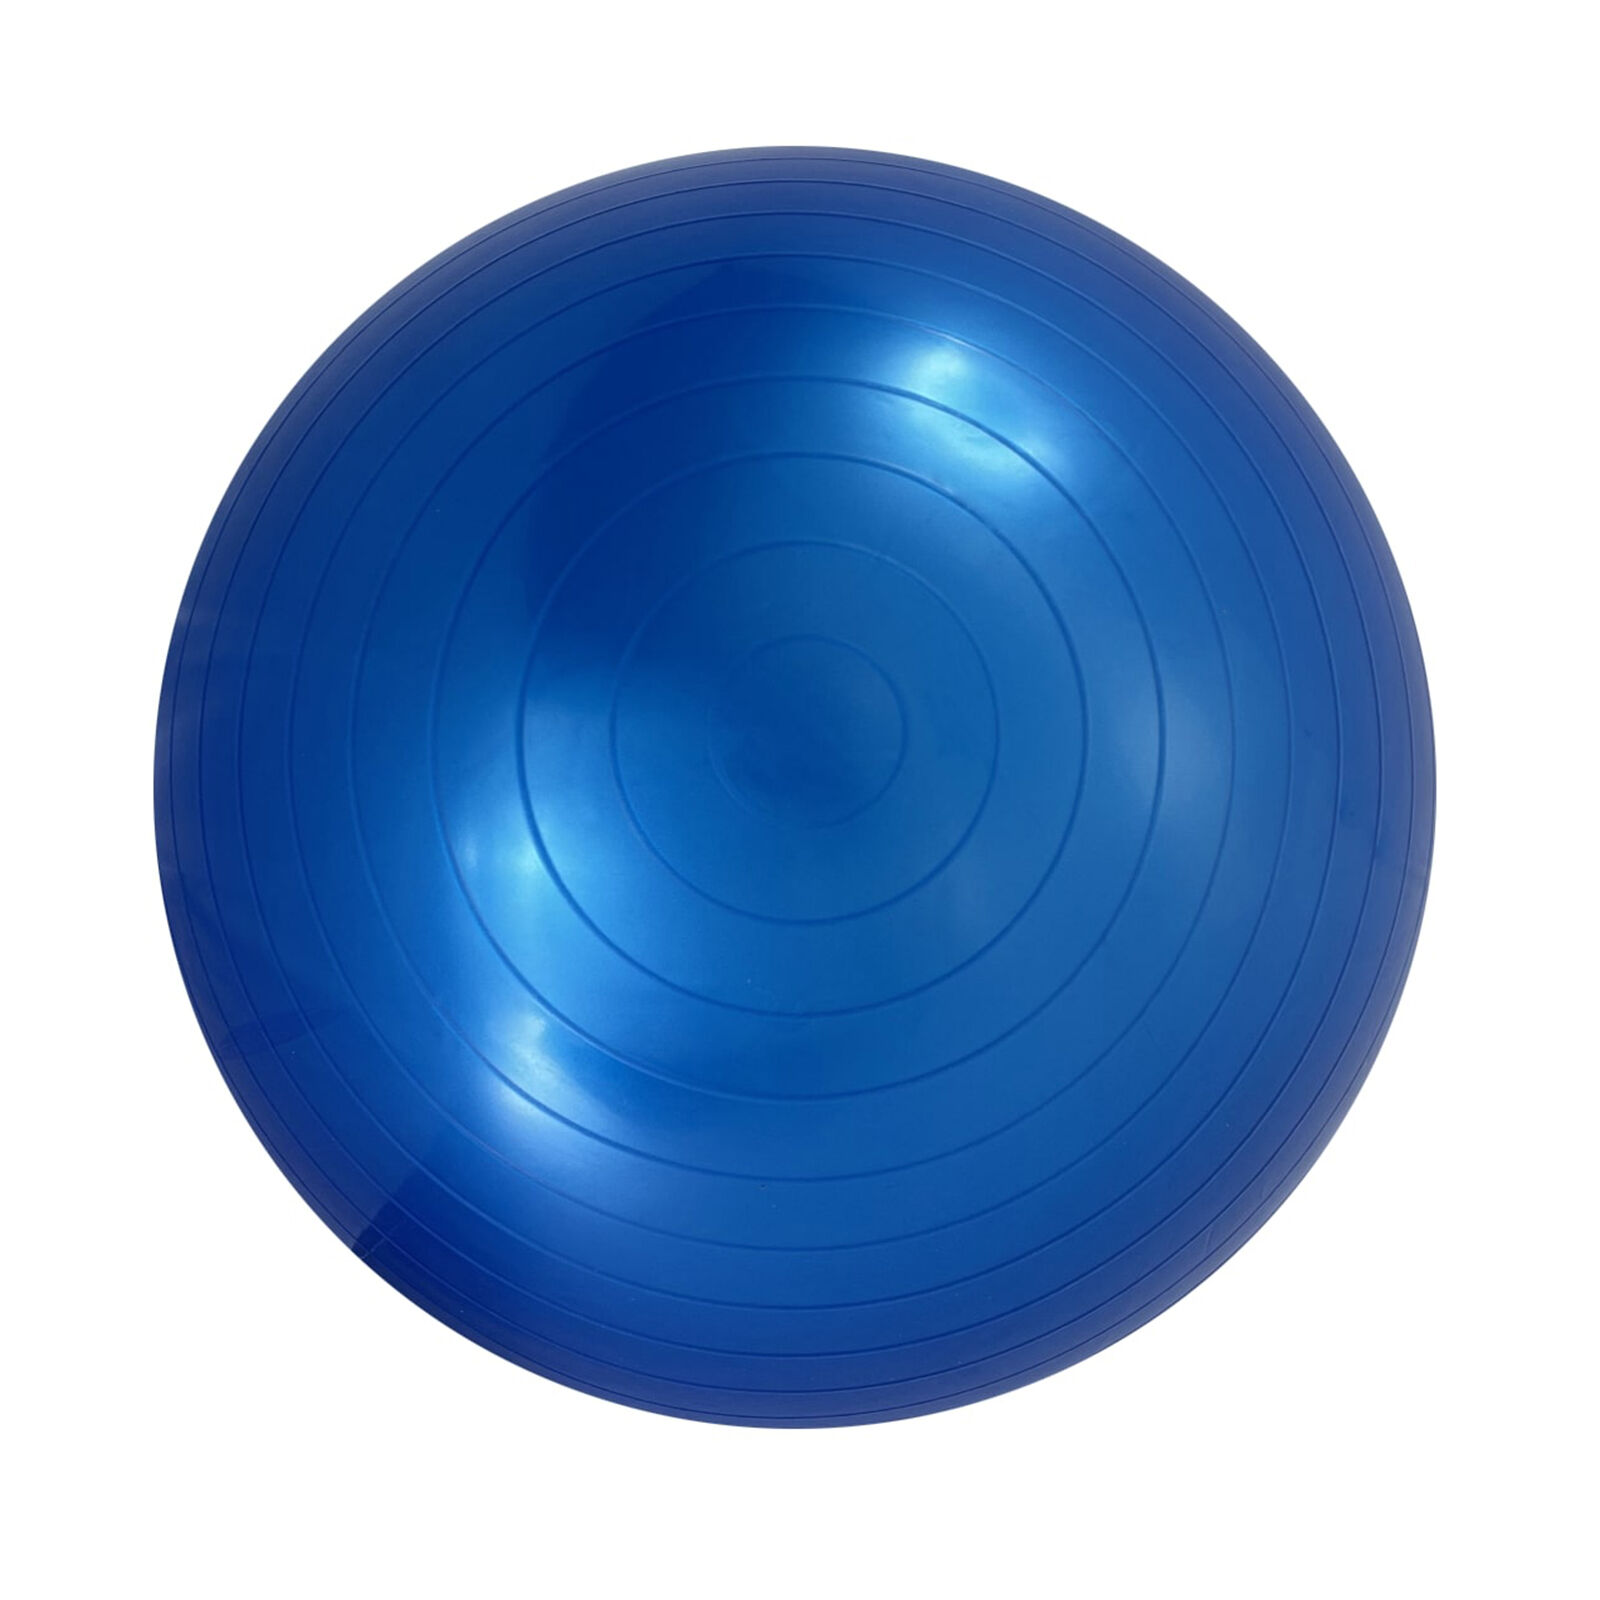 Фитбол с насосом UNIX Fit антивзрыв, 75 см, голубой UNIX Fit™ Фитболы